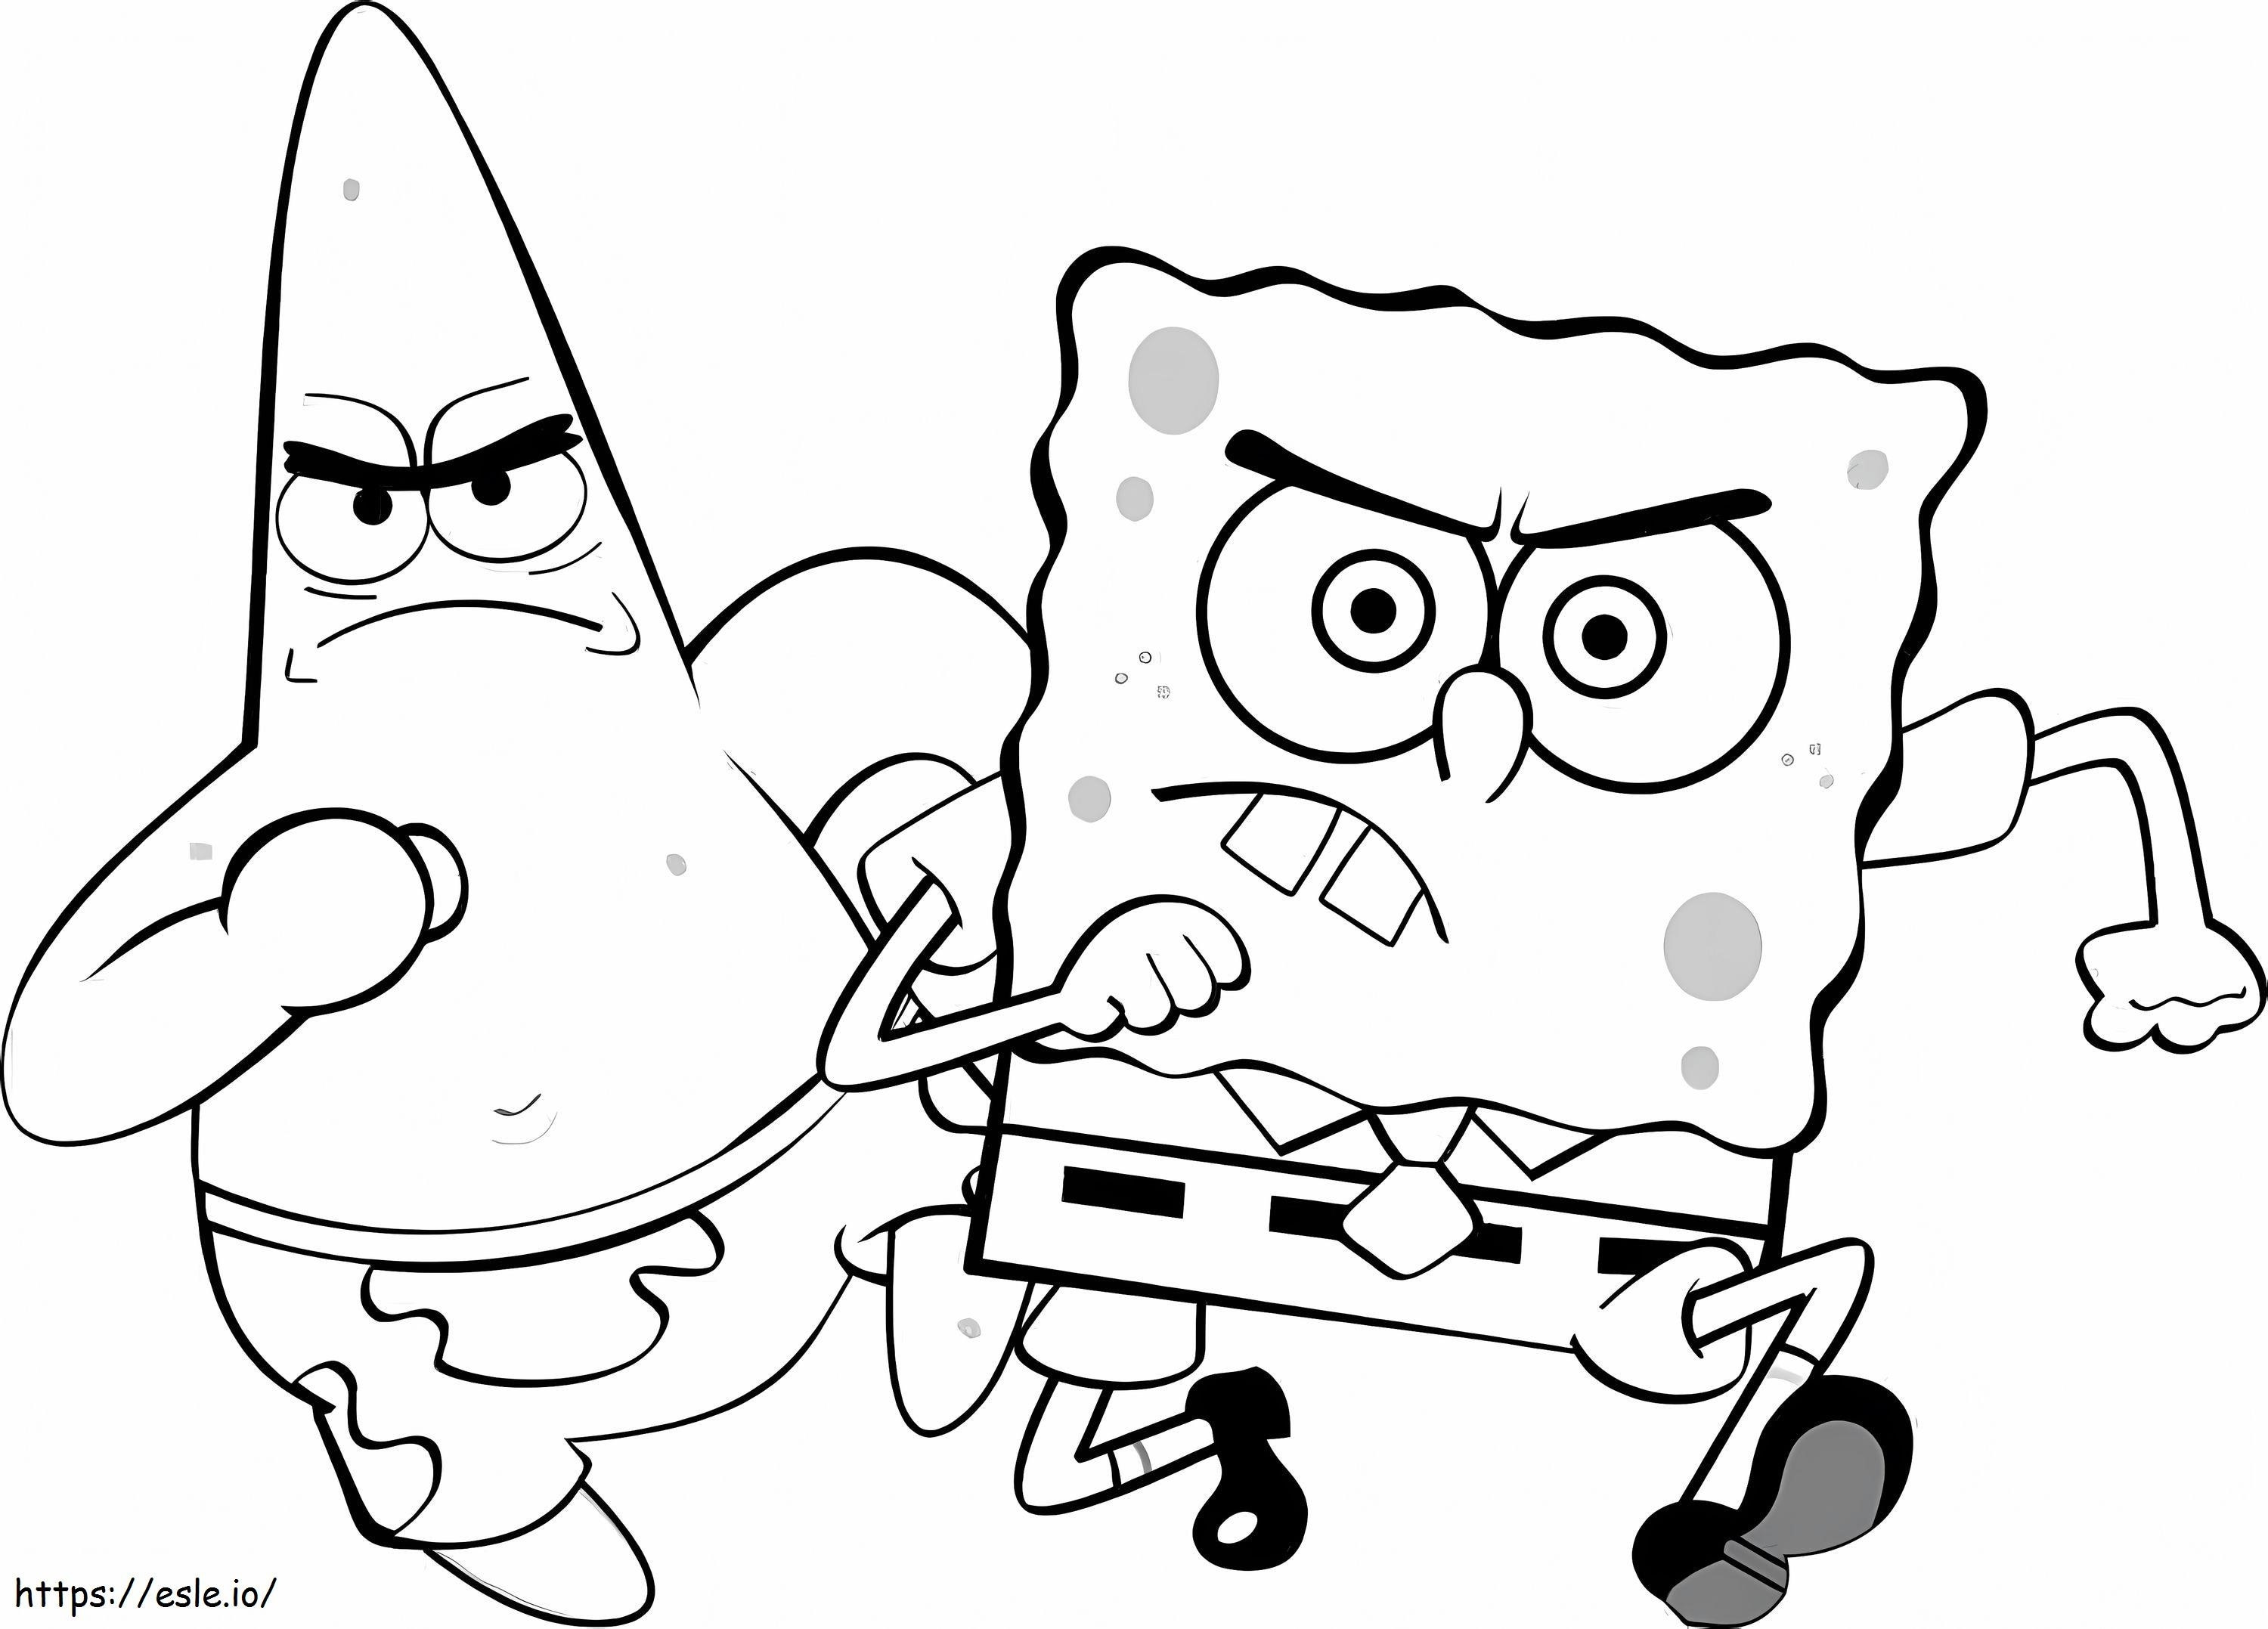 Patrick Star i SpongeBob biegnący kolorowanka